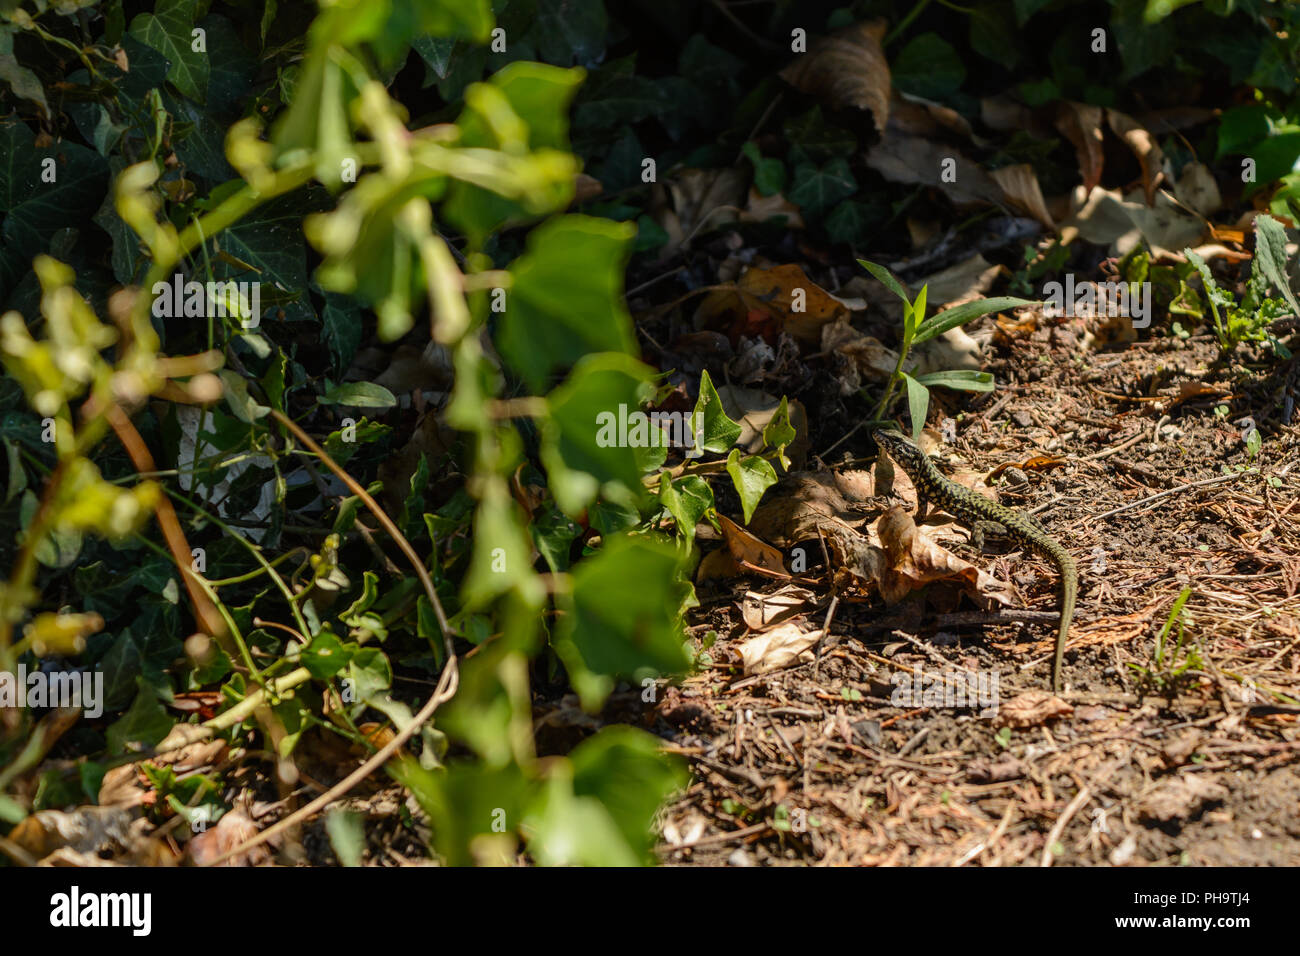 Verde lagarto ágil en un jardín. Foto de stock